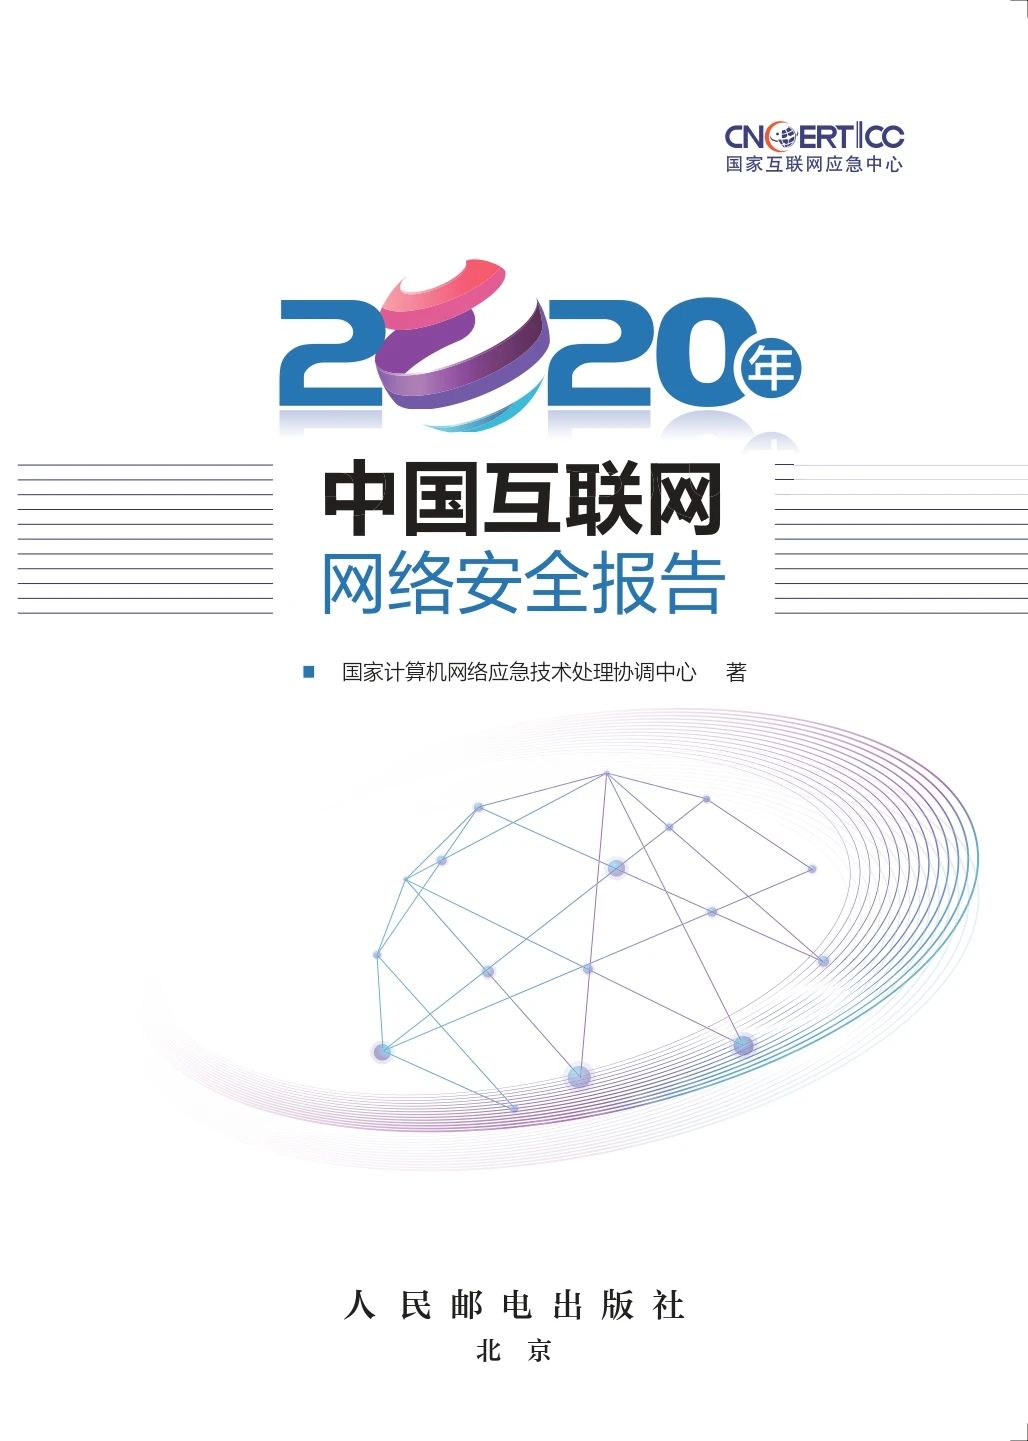 《2020年中国互联网网络安全报告》免费下载